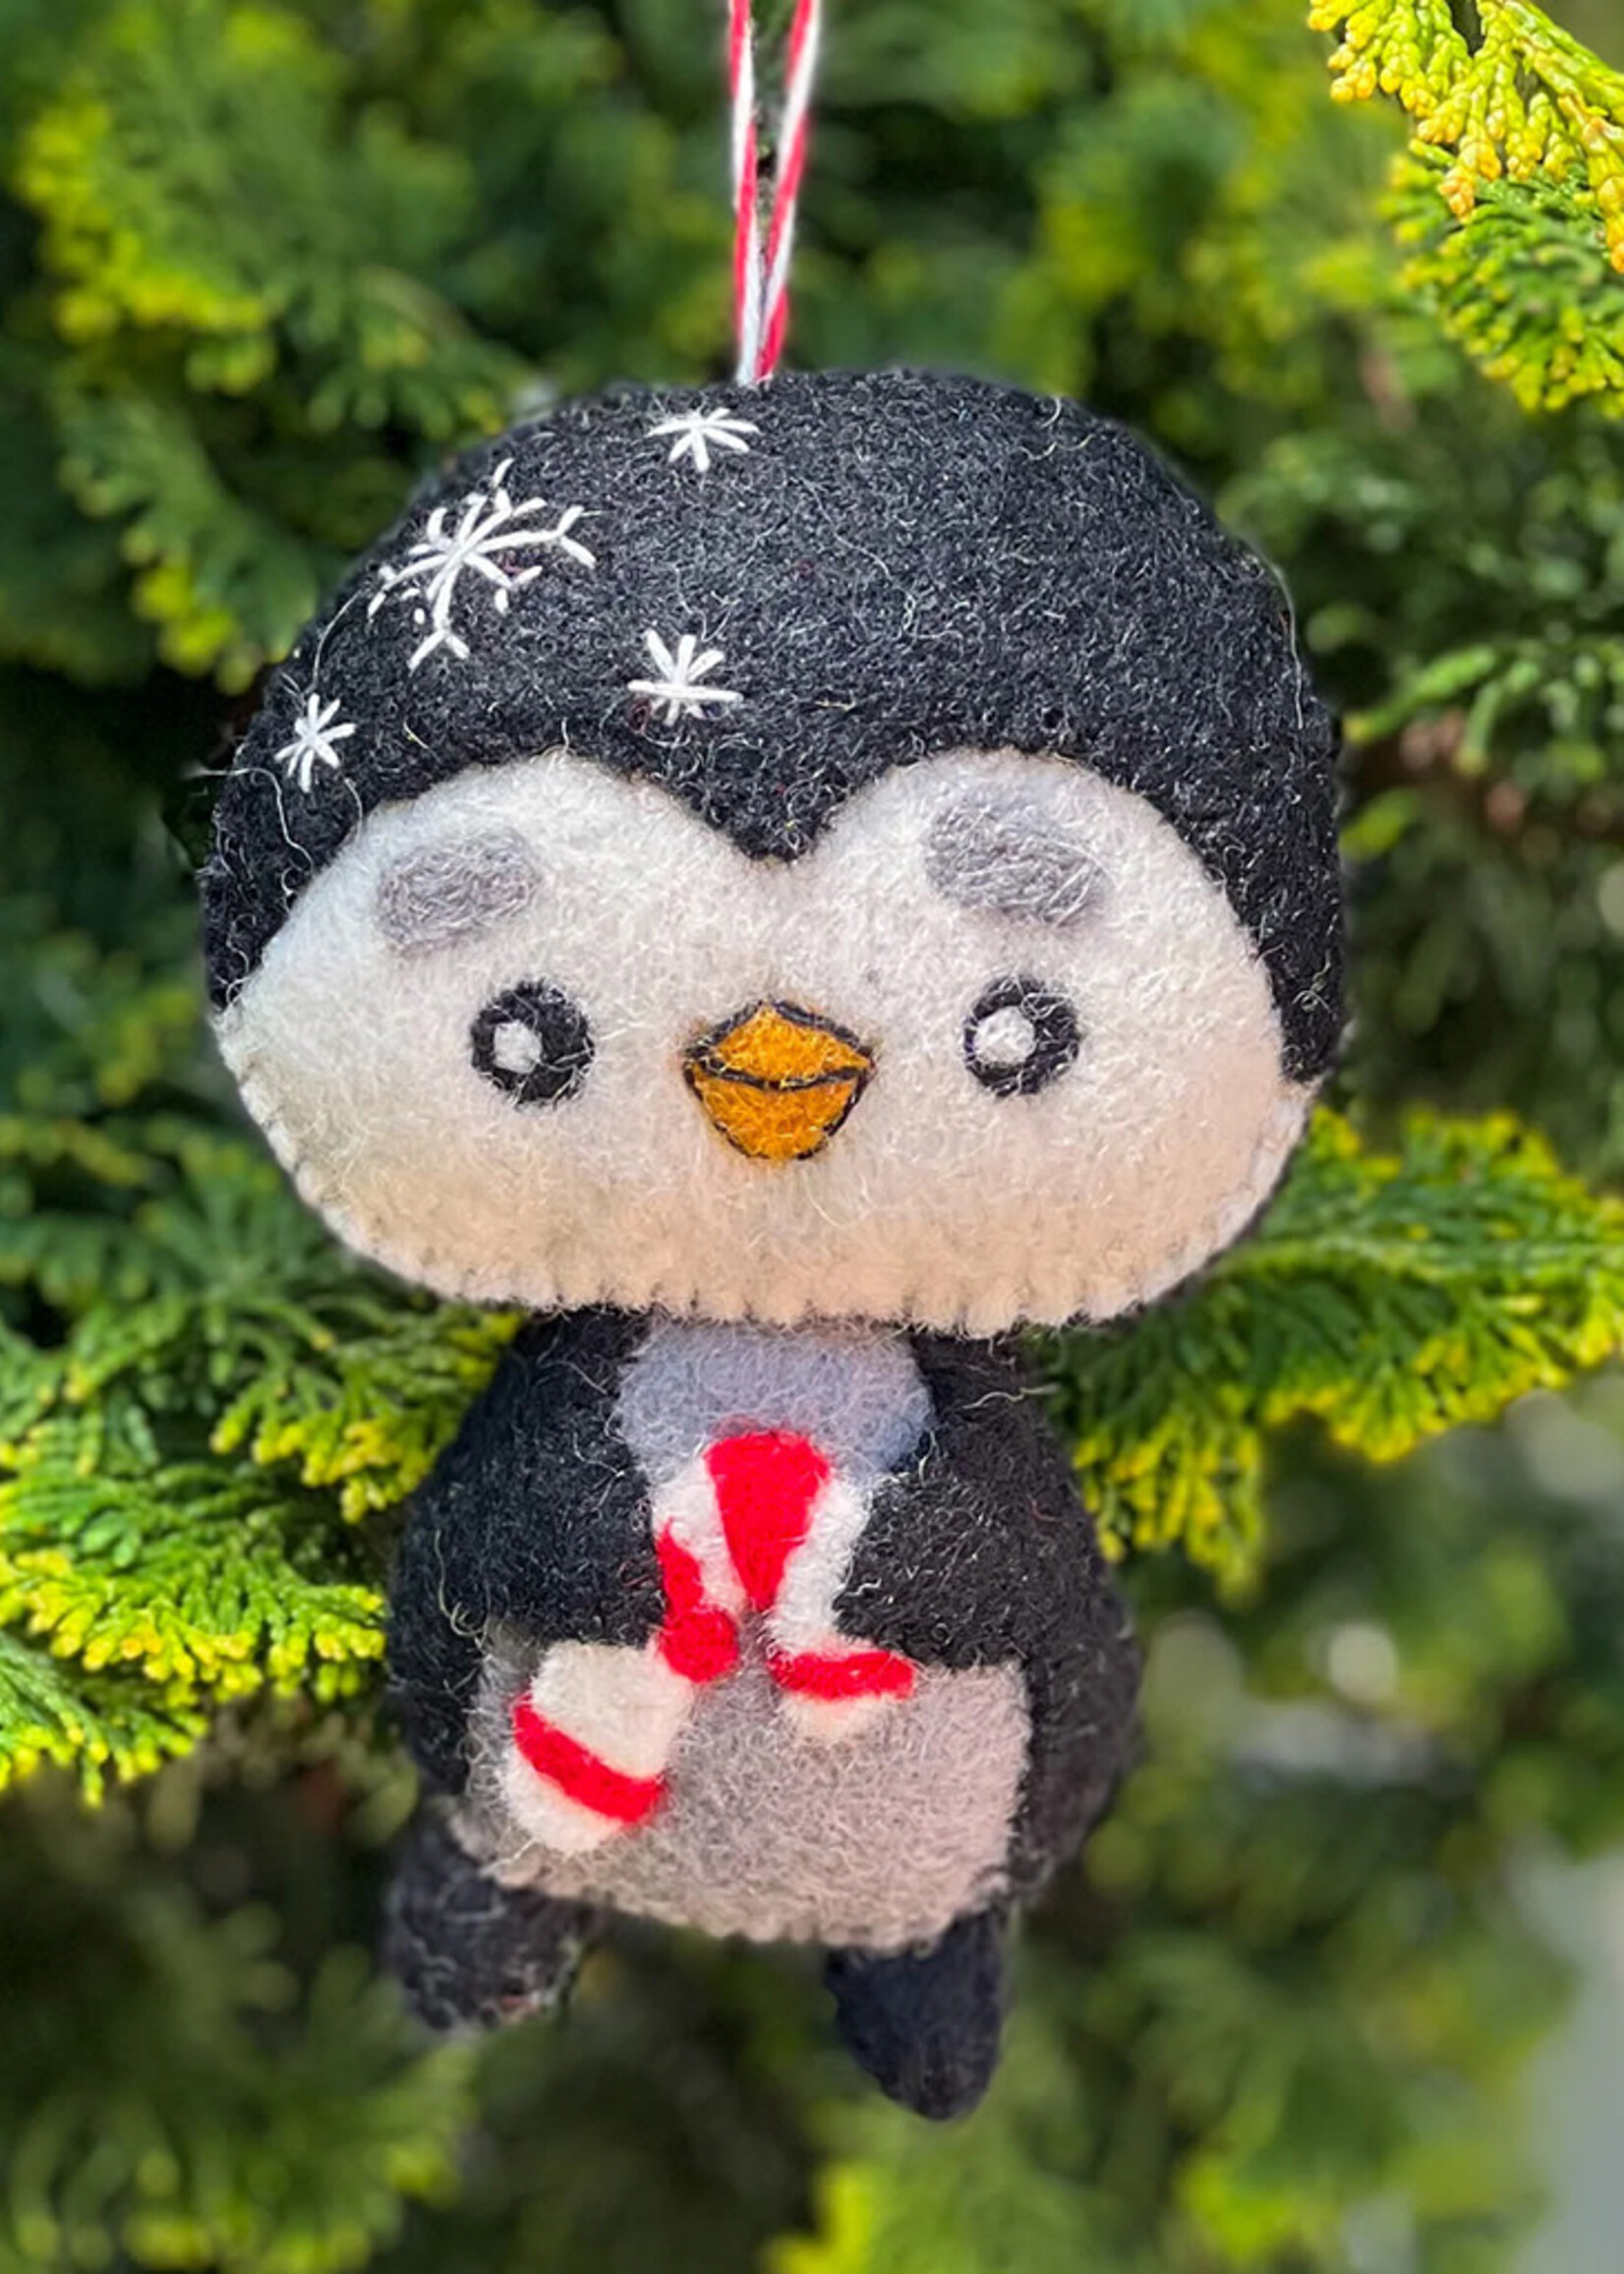 Felt Penguin Ornament